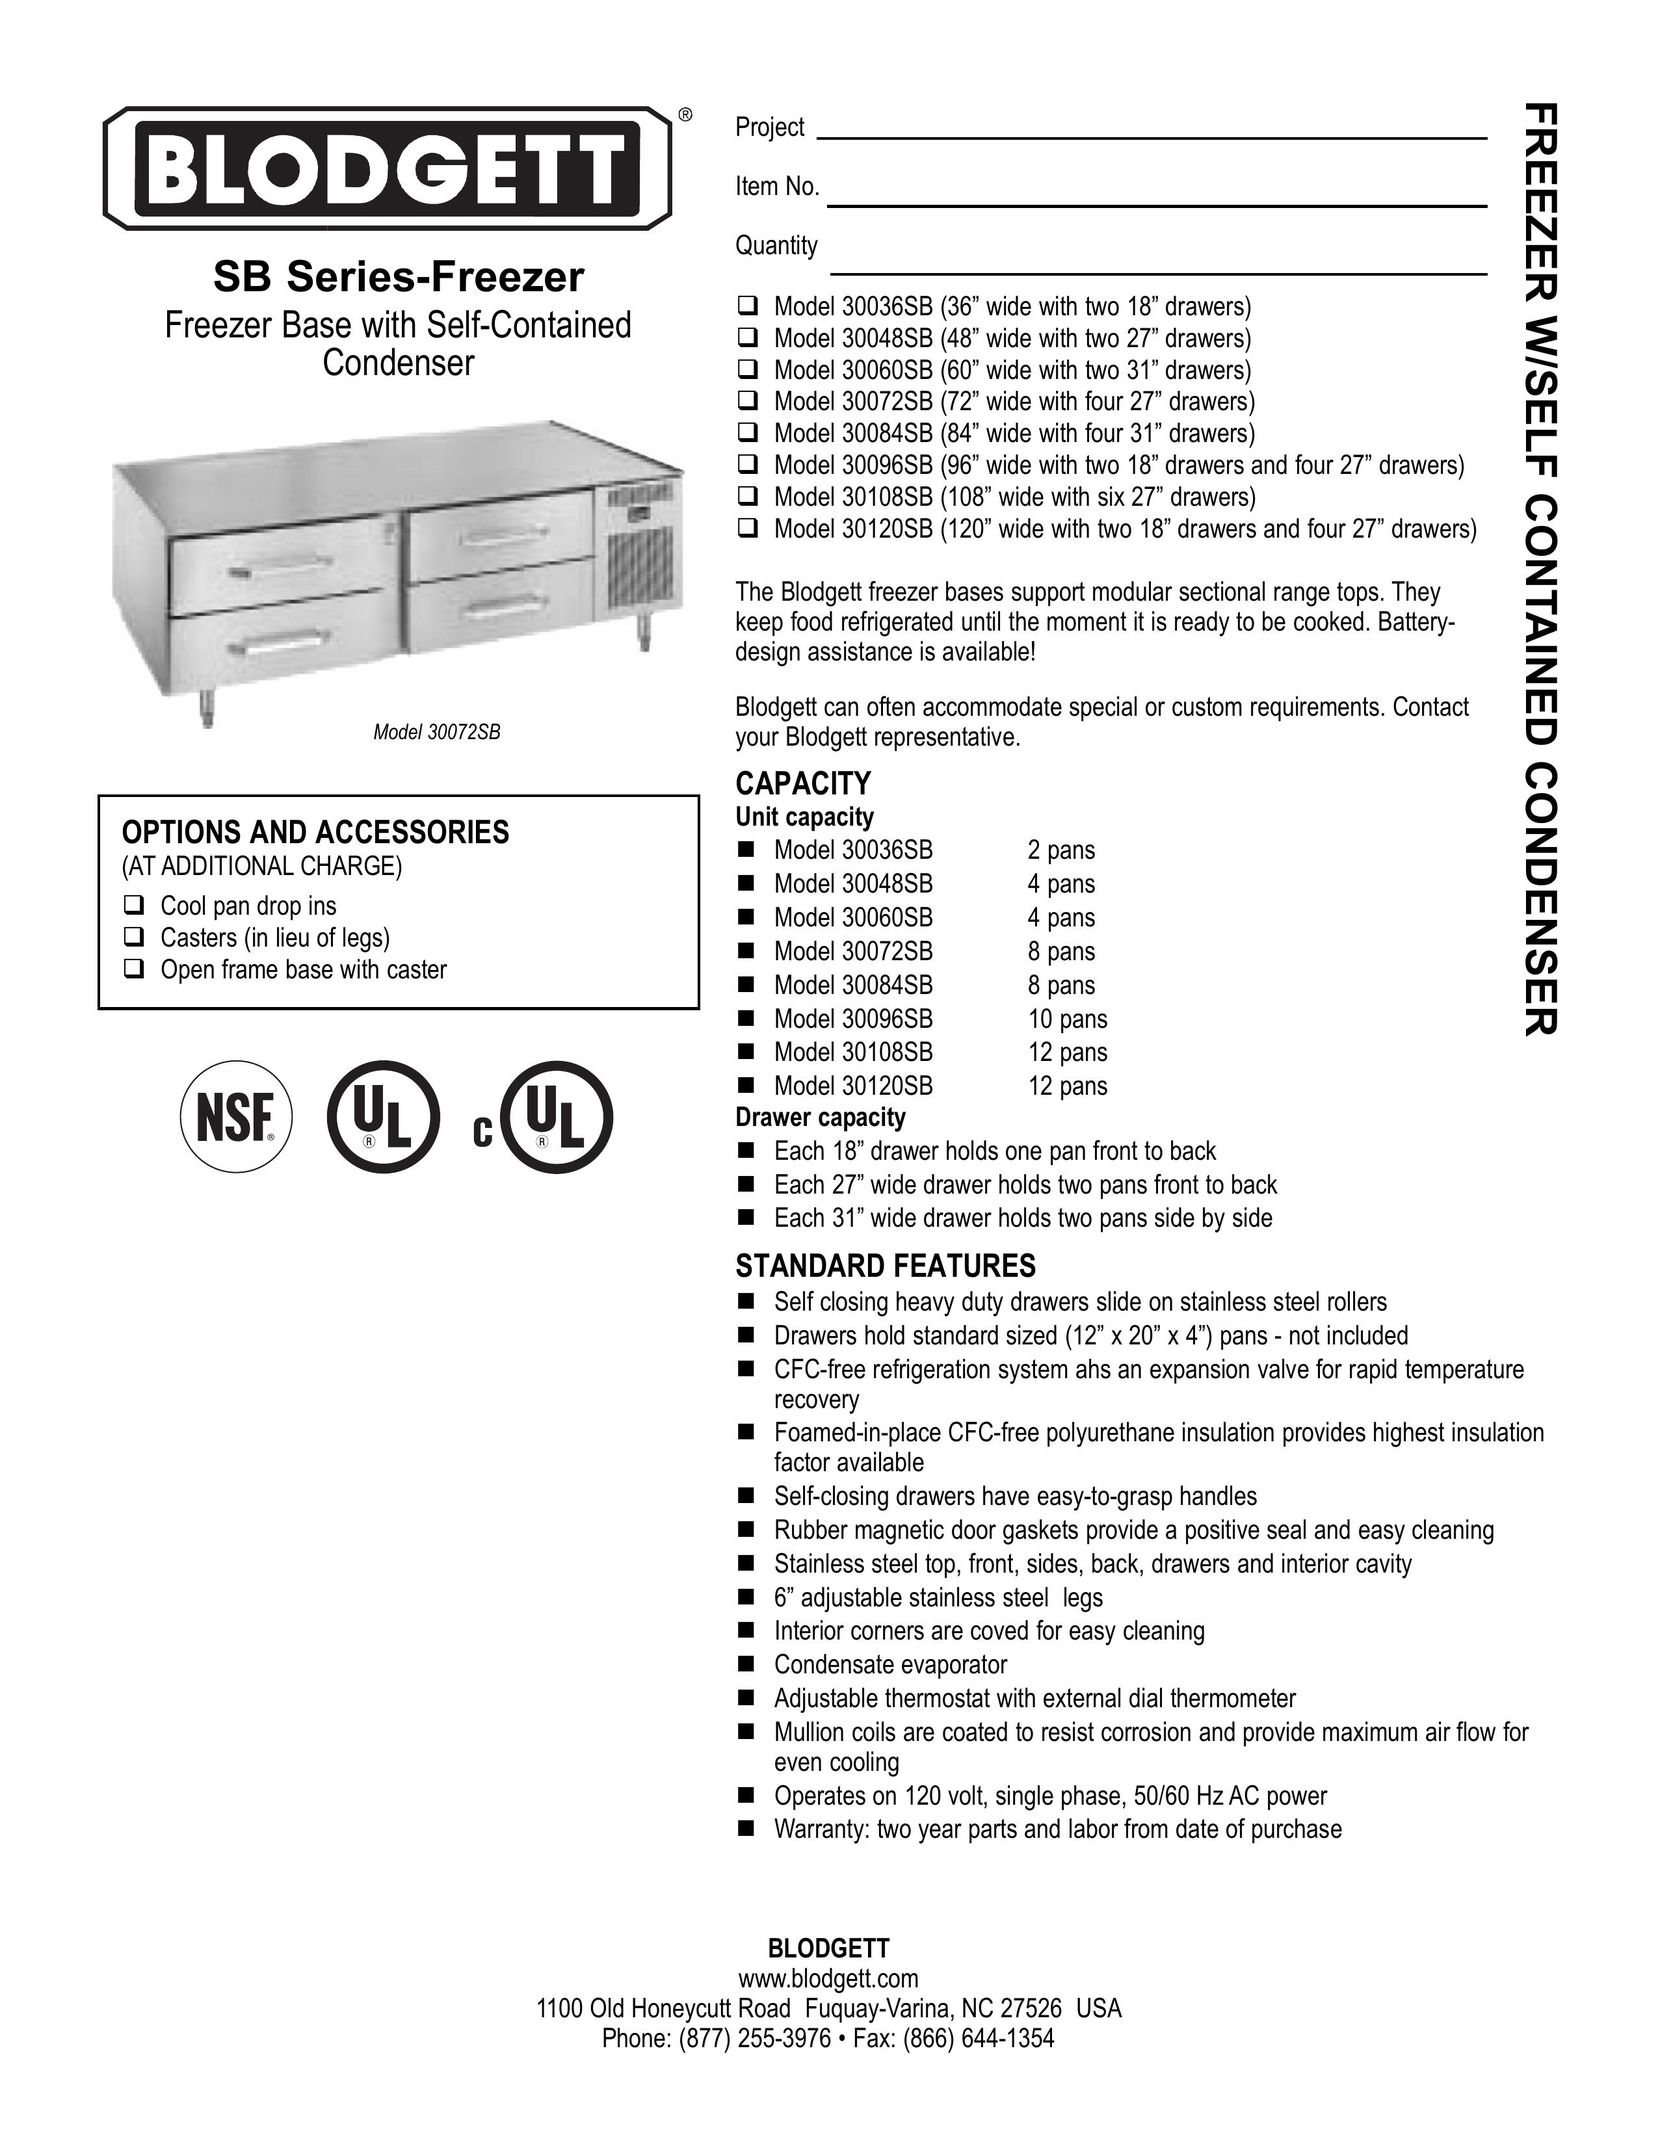 Blodgett 30108SB Freezer User Manual